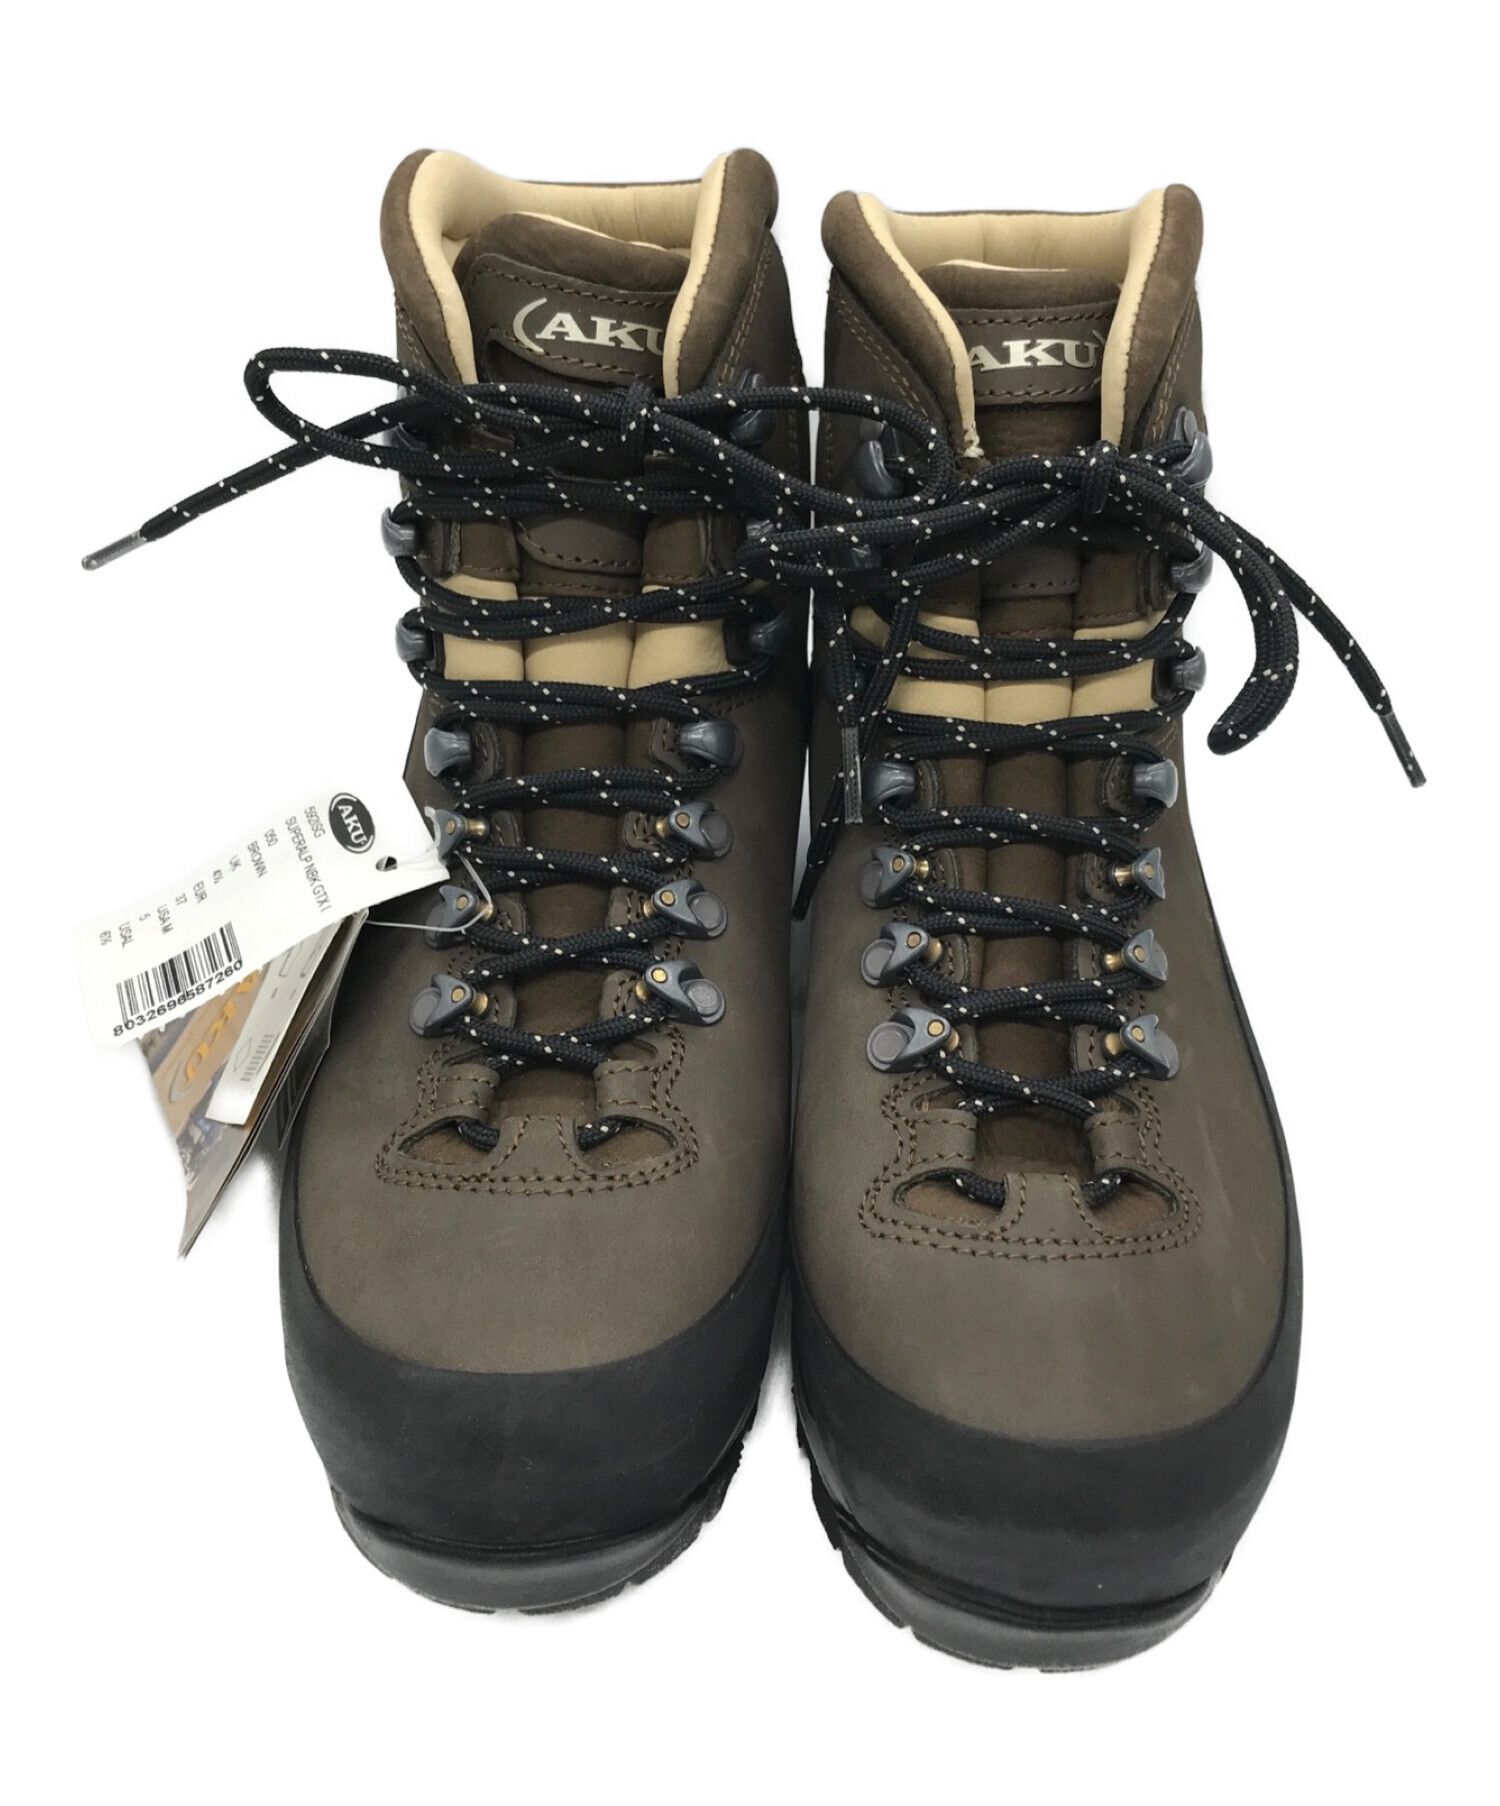 マウンテンブーツ 登山靴 AKU - 登山用品